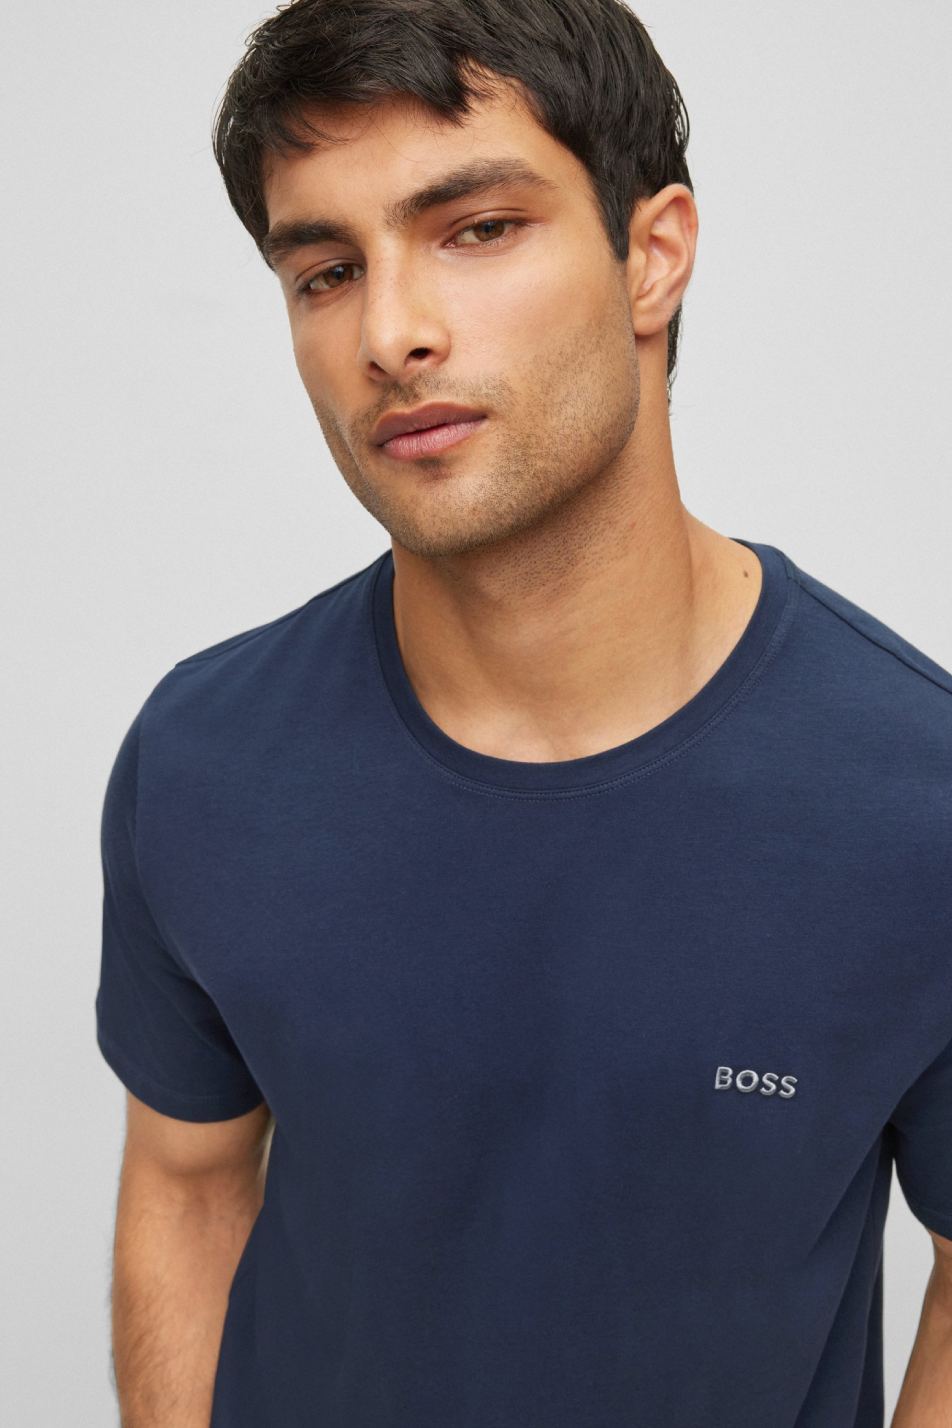 BOSS Men's Regular Fit T-Shirt